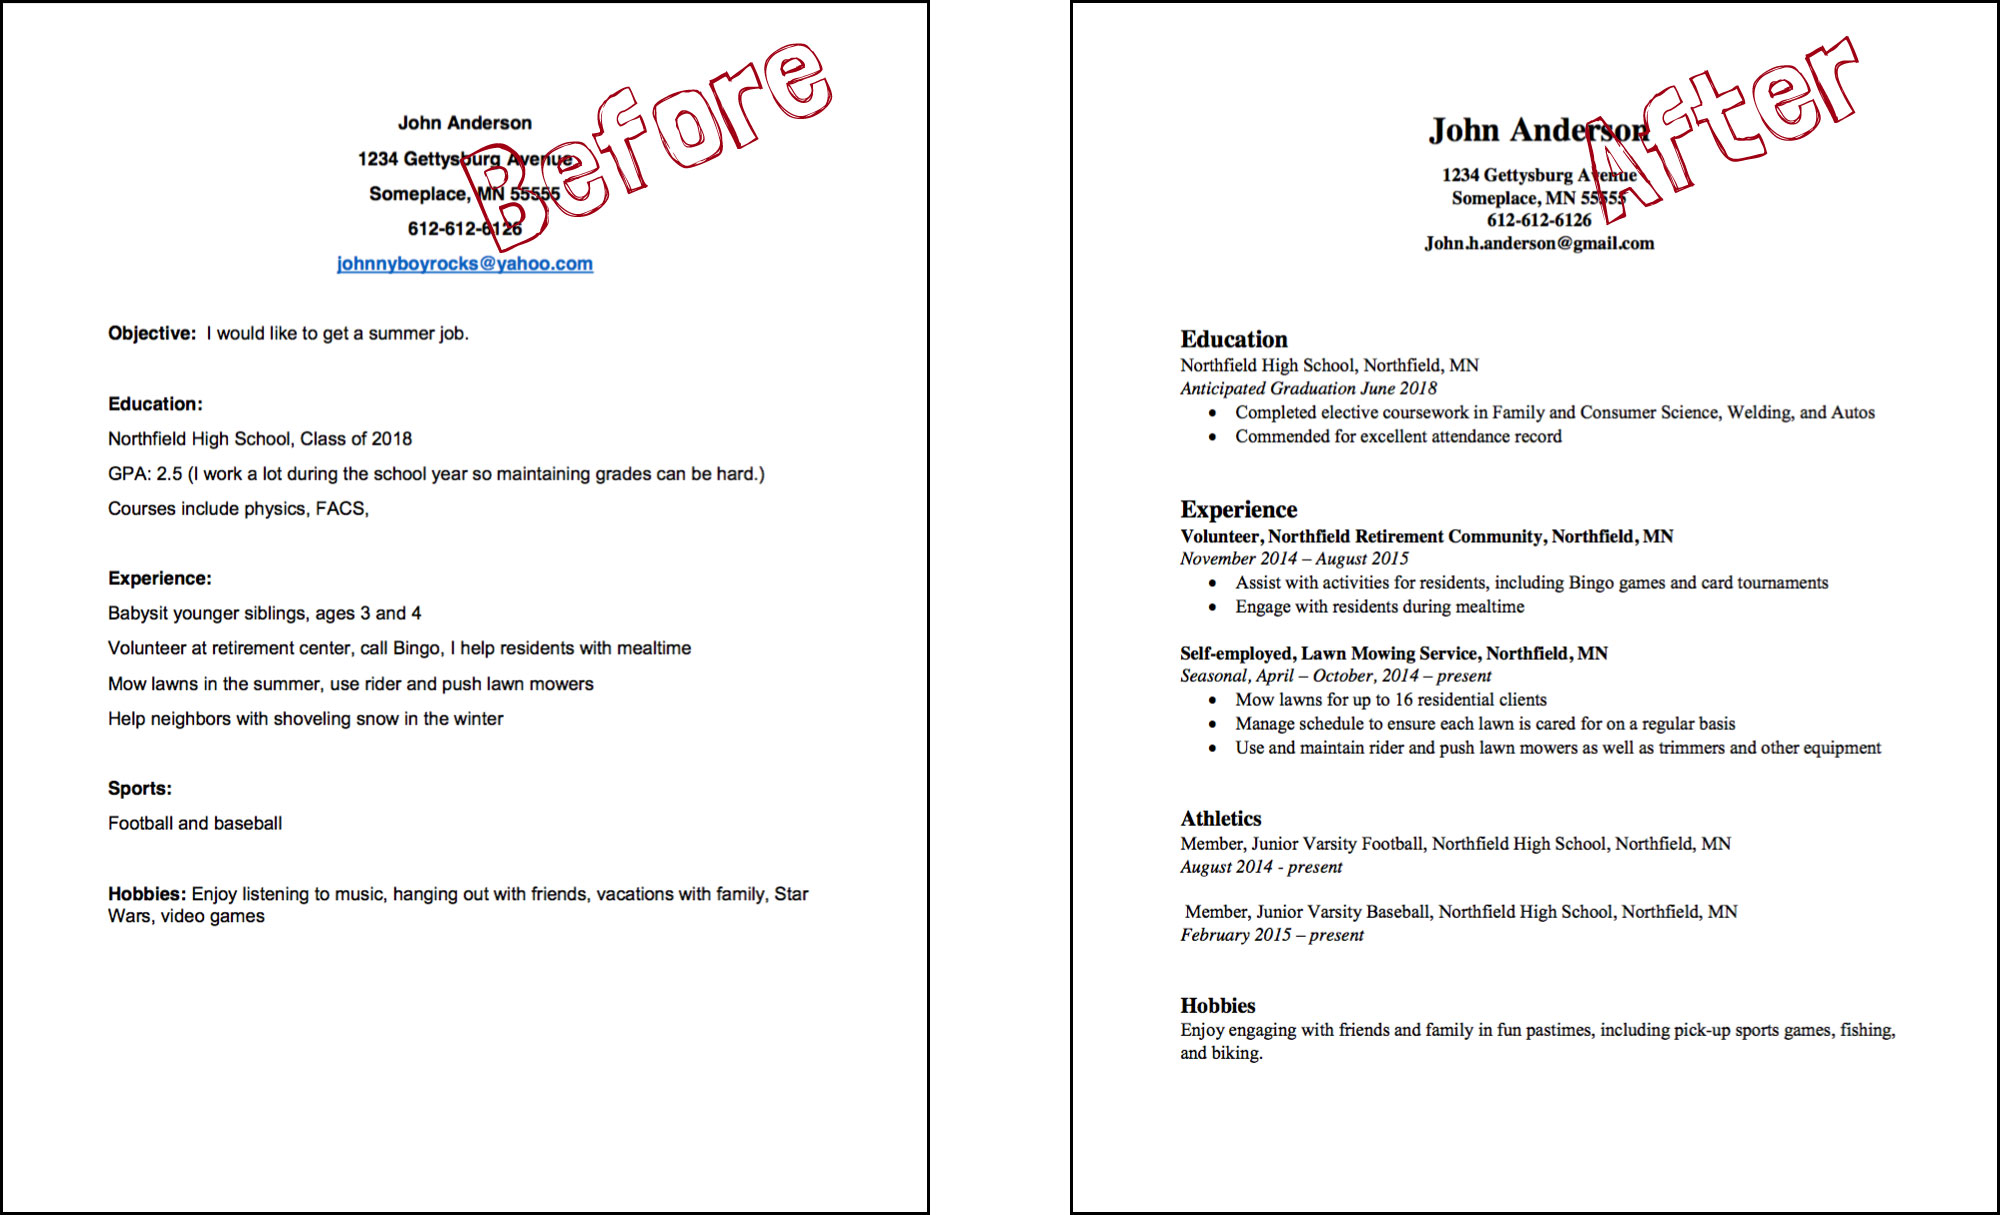 Resume Cover Letter Resume1 resume cover letter|wikiresume.com